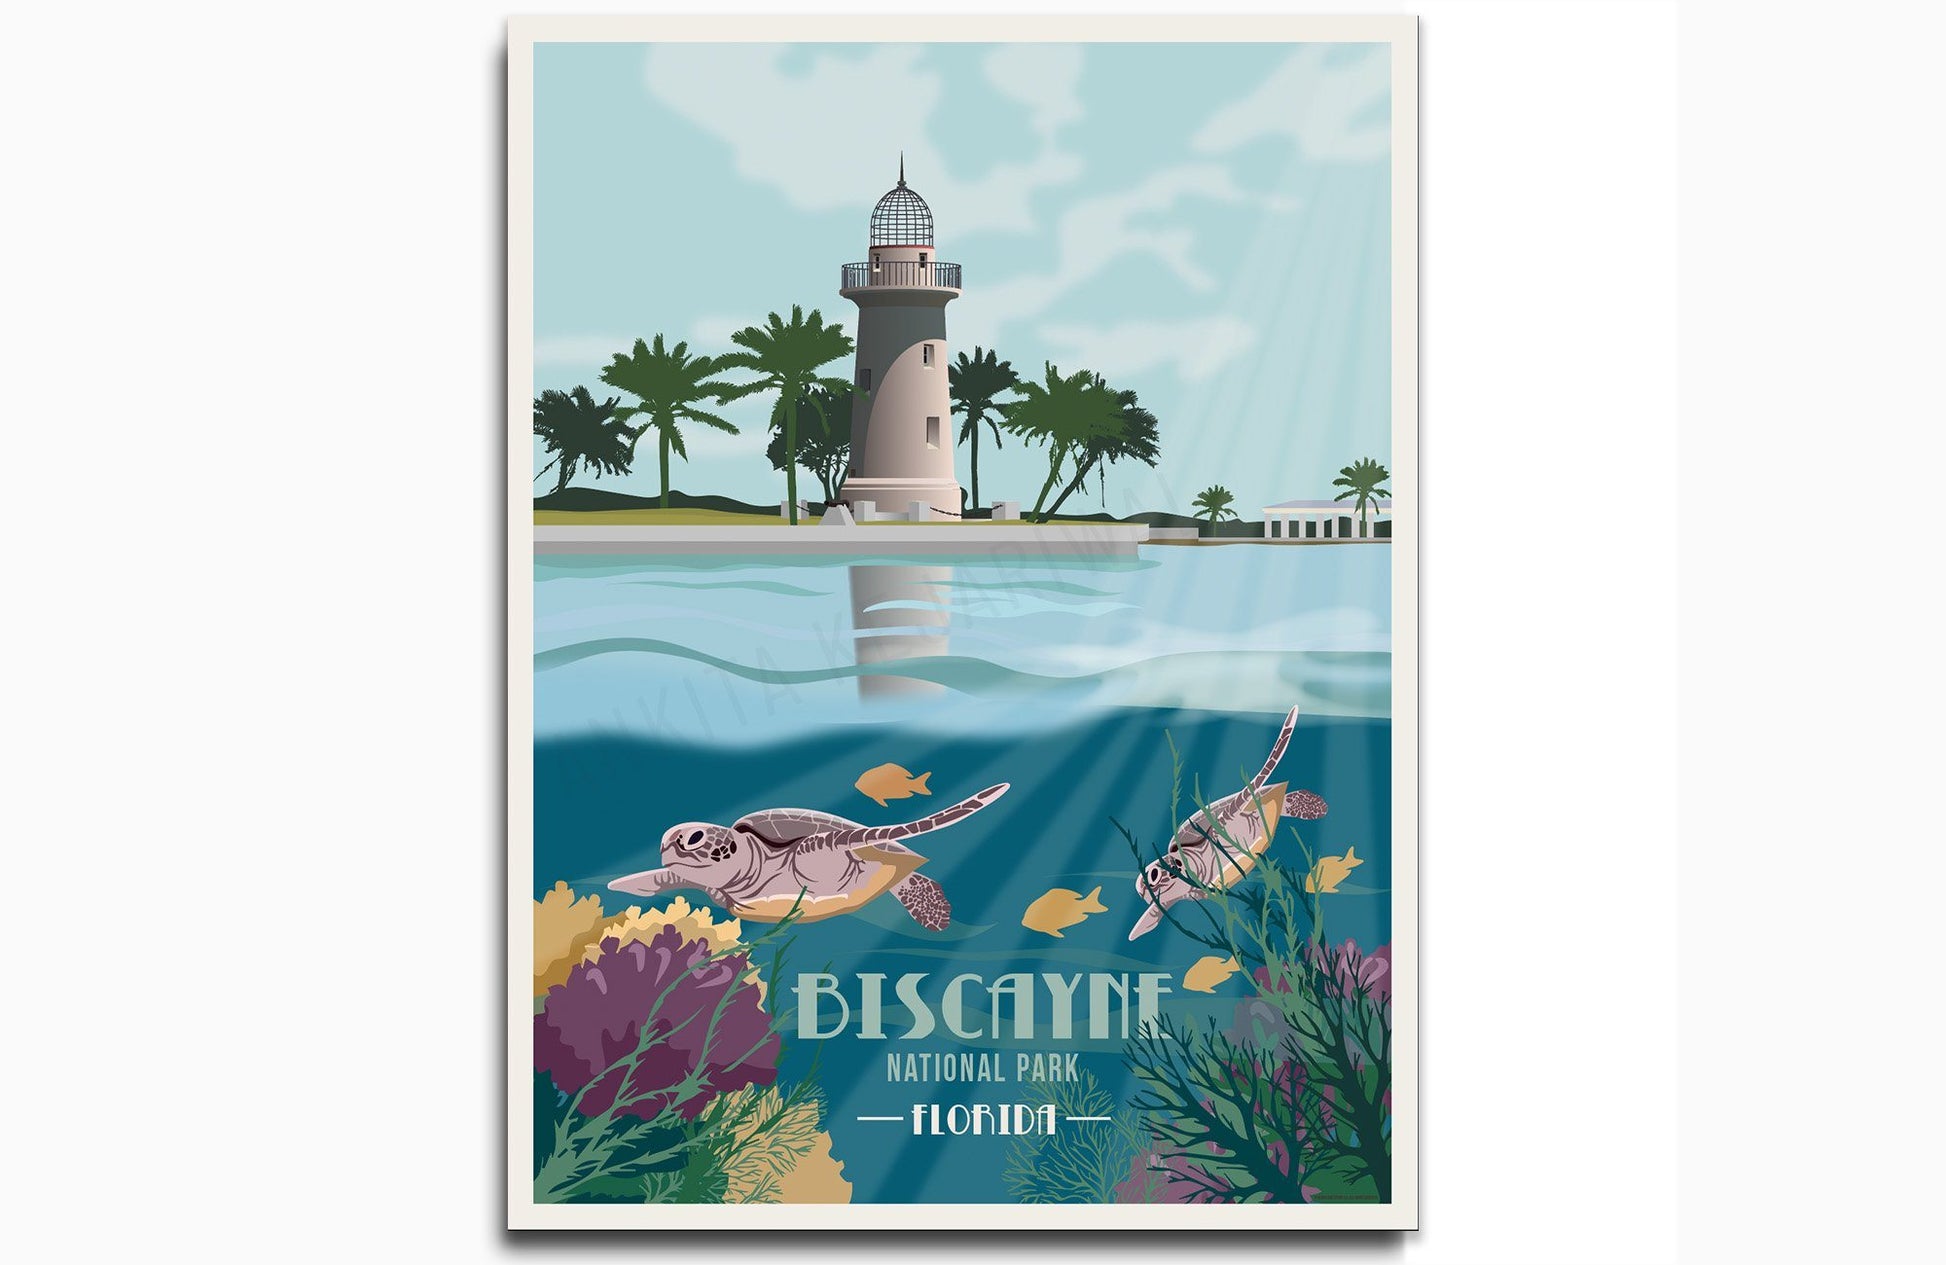 Biscayne National Park, Florida, National Park Poster, Unframed Map World Vibe Studio 8X10 